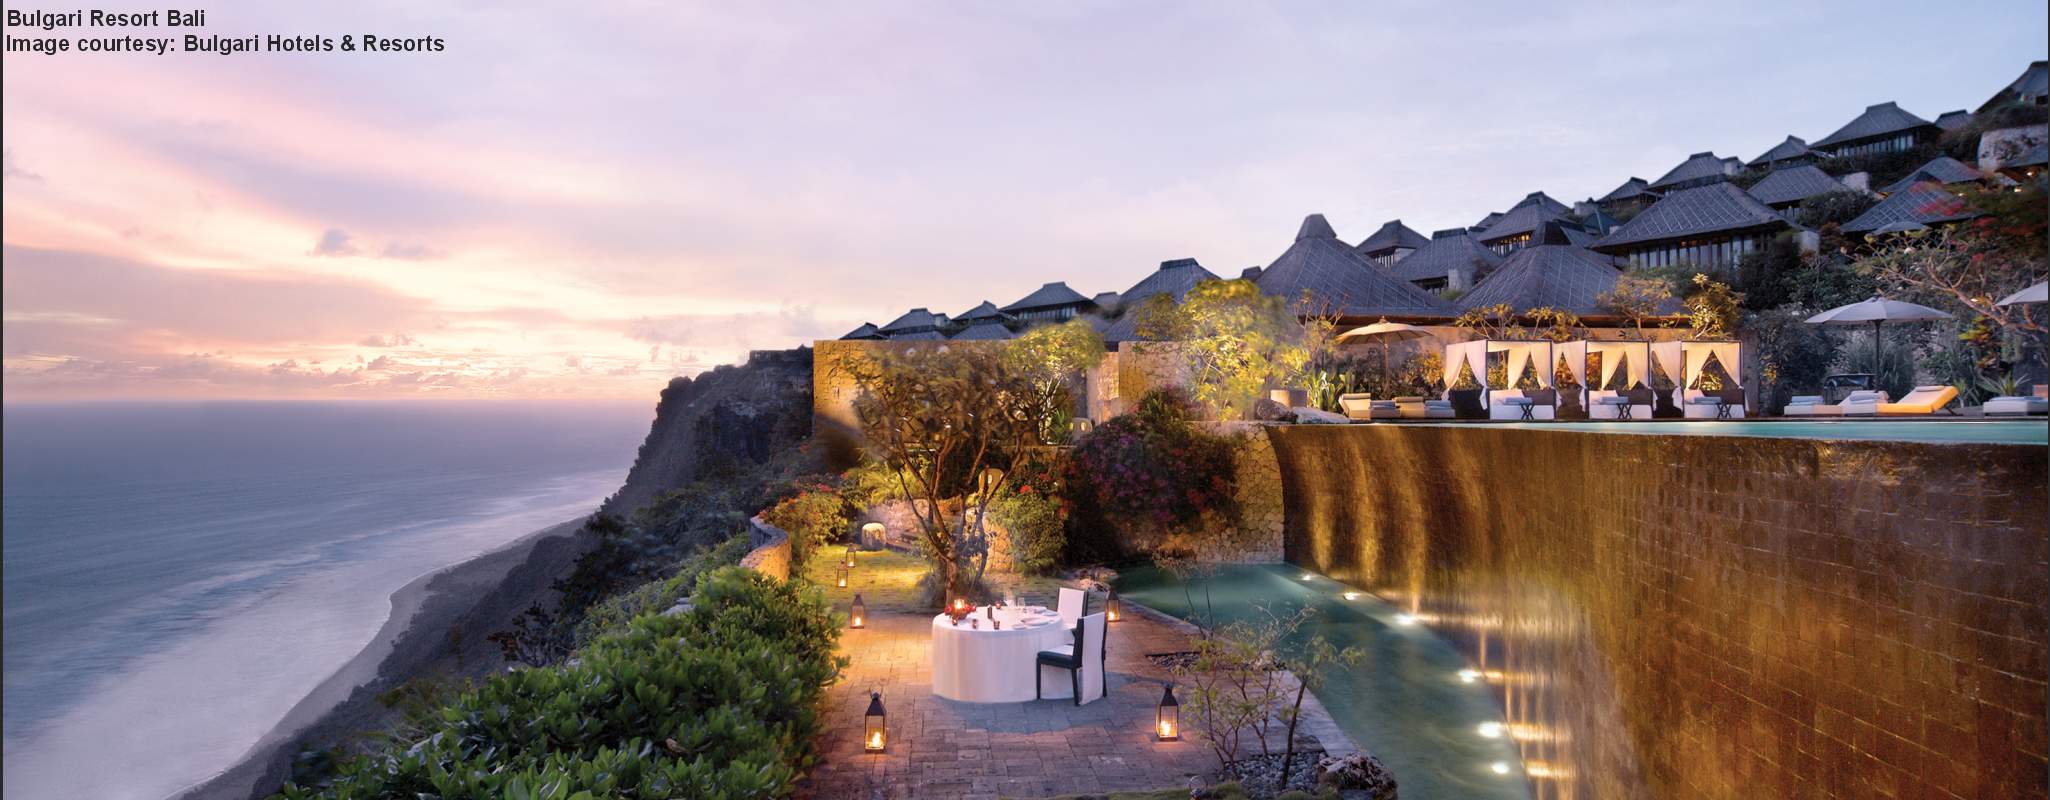 Bulgari Resort Bali image